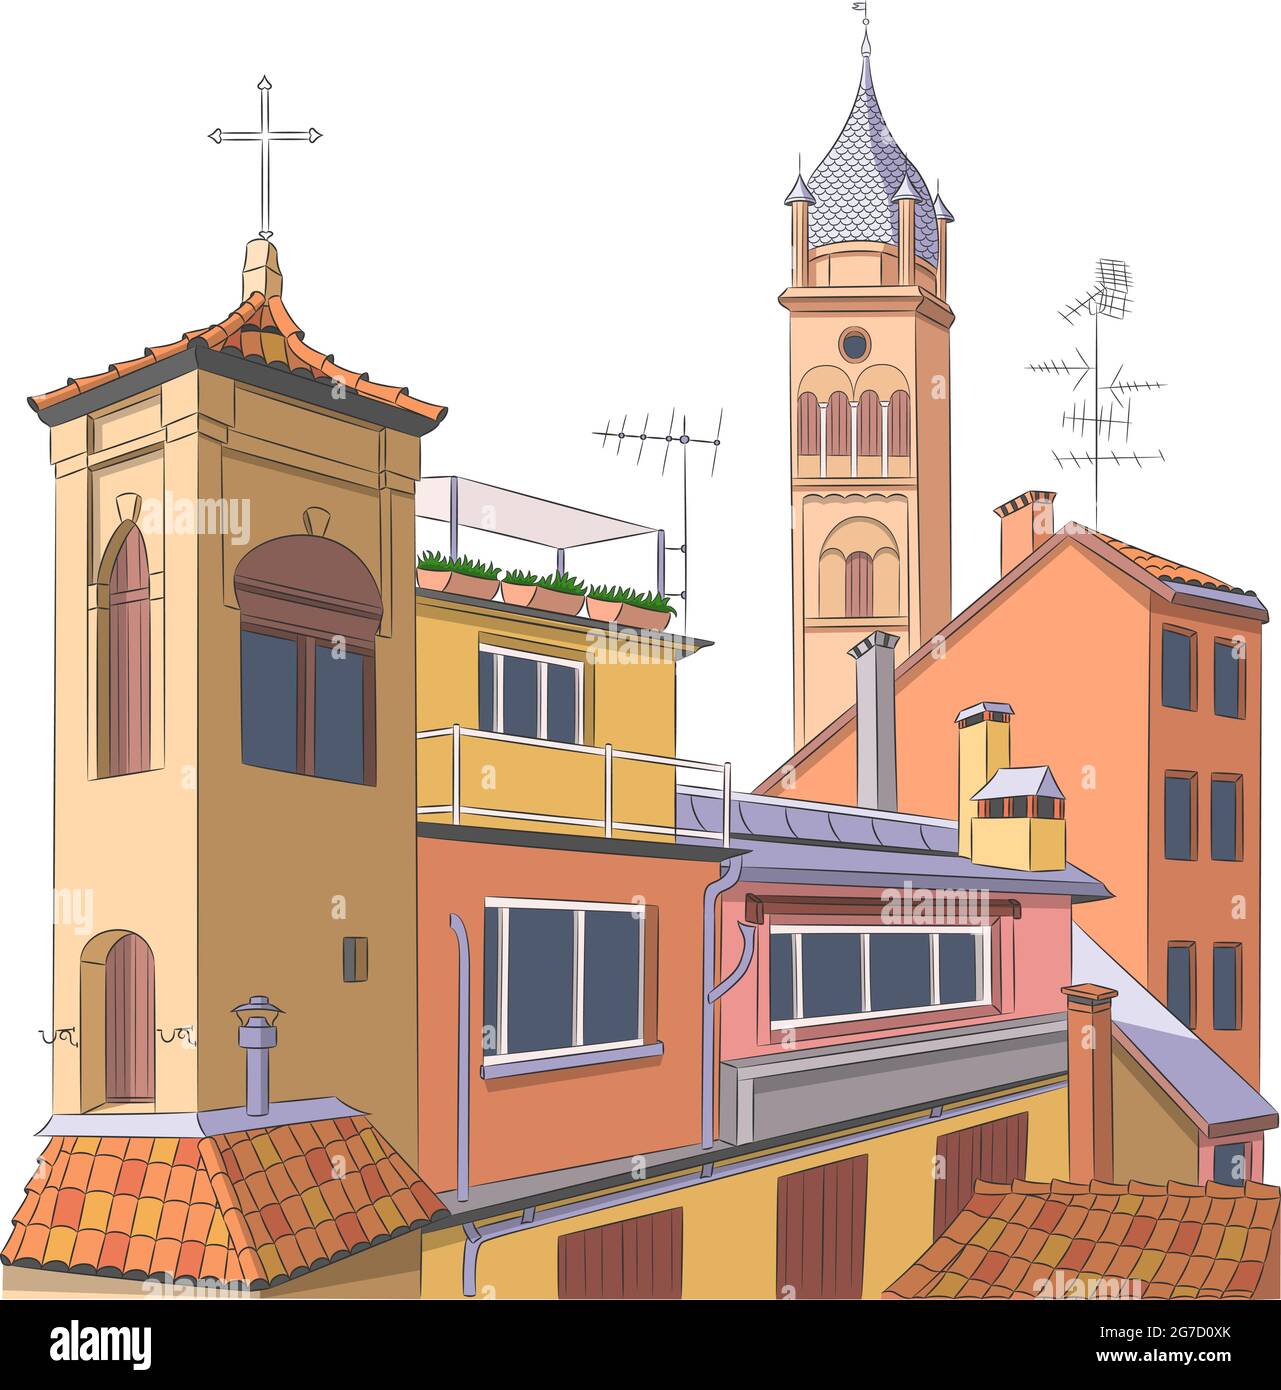 Vue sur les façades colorées des toits carrelés et la tour de la vieille ville. Bologne. Italie. Illustration de Vecteur